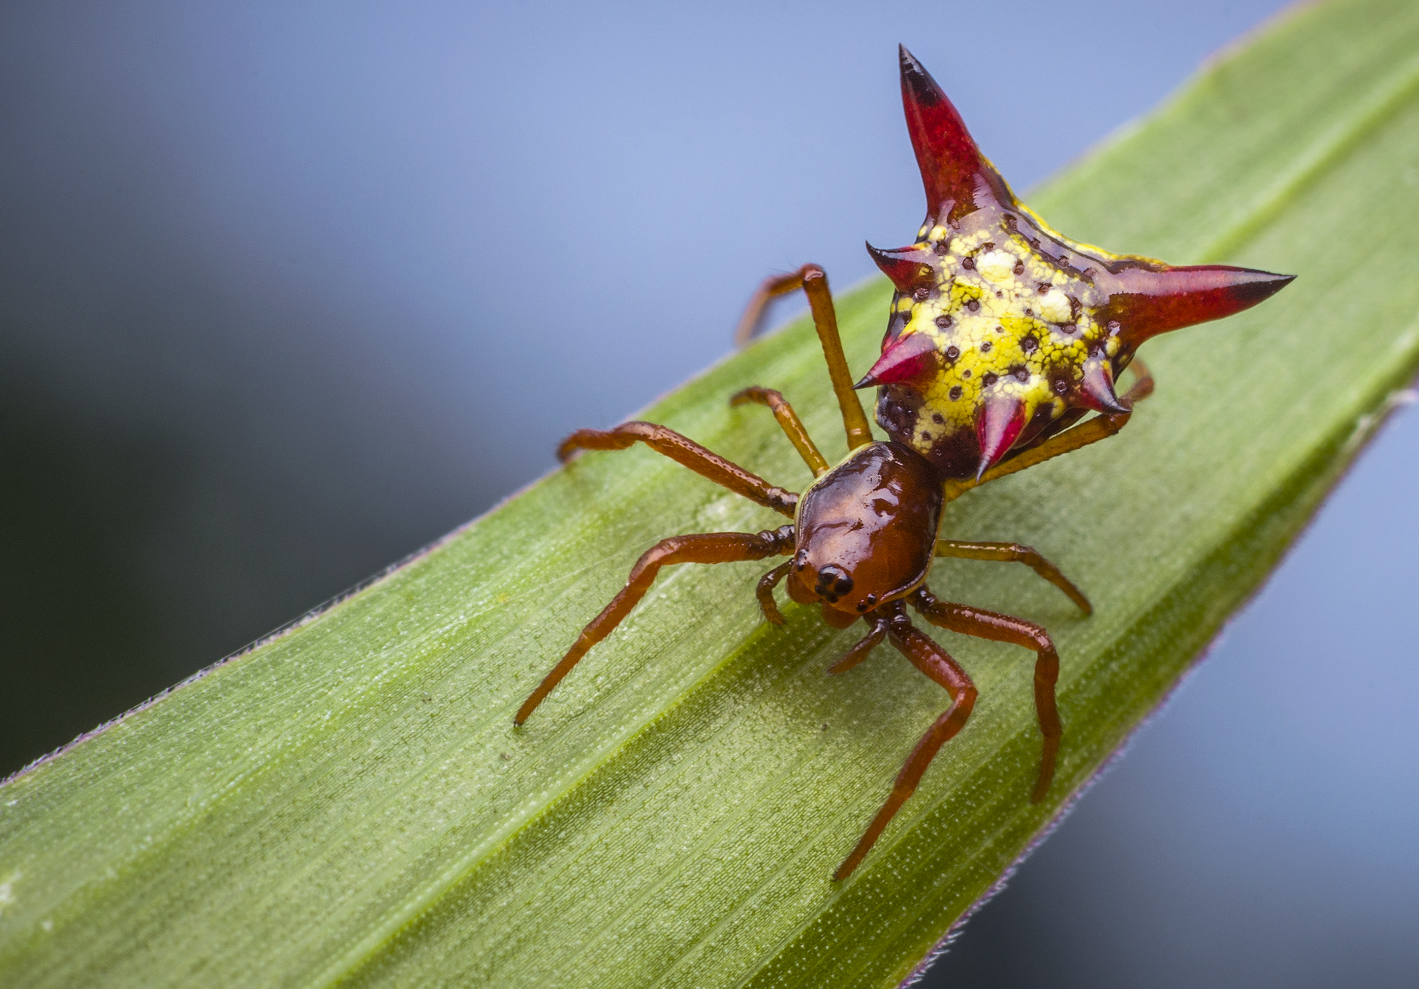 A aranha da espécie 'Micrathena sagittata' (Foto: Wikimedia Commons)